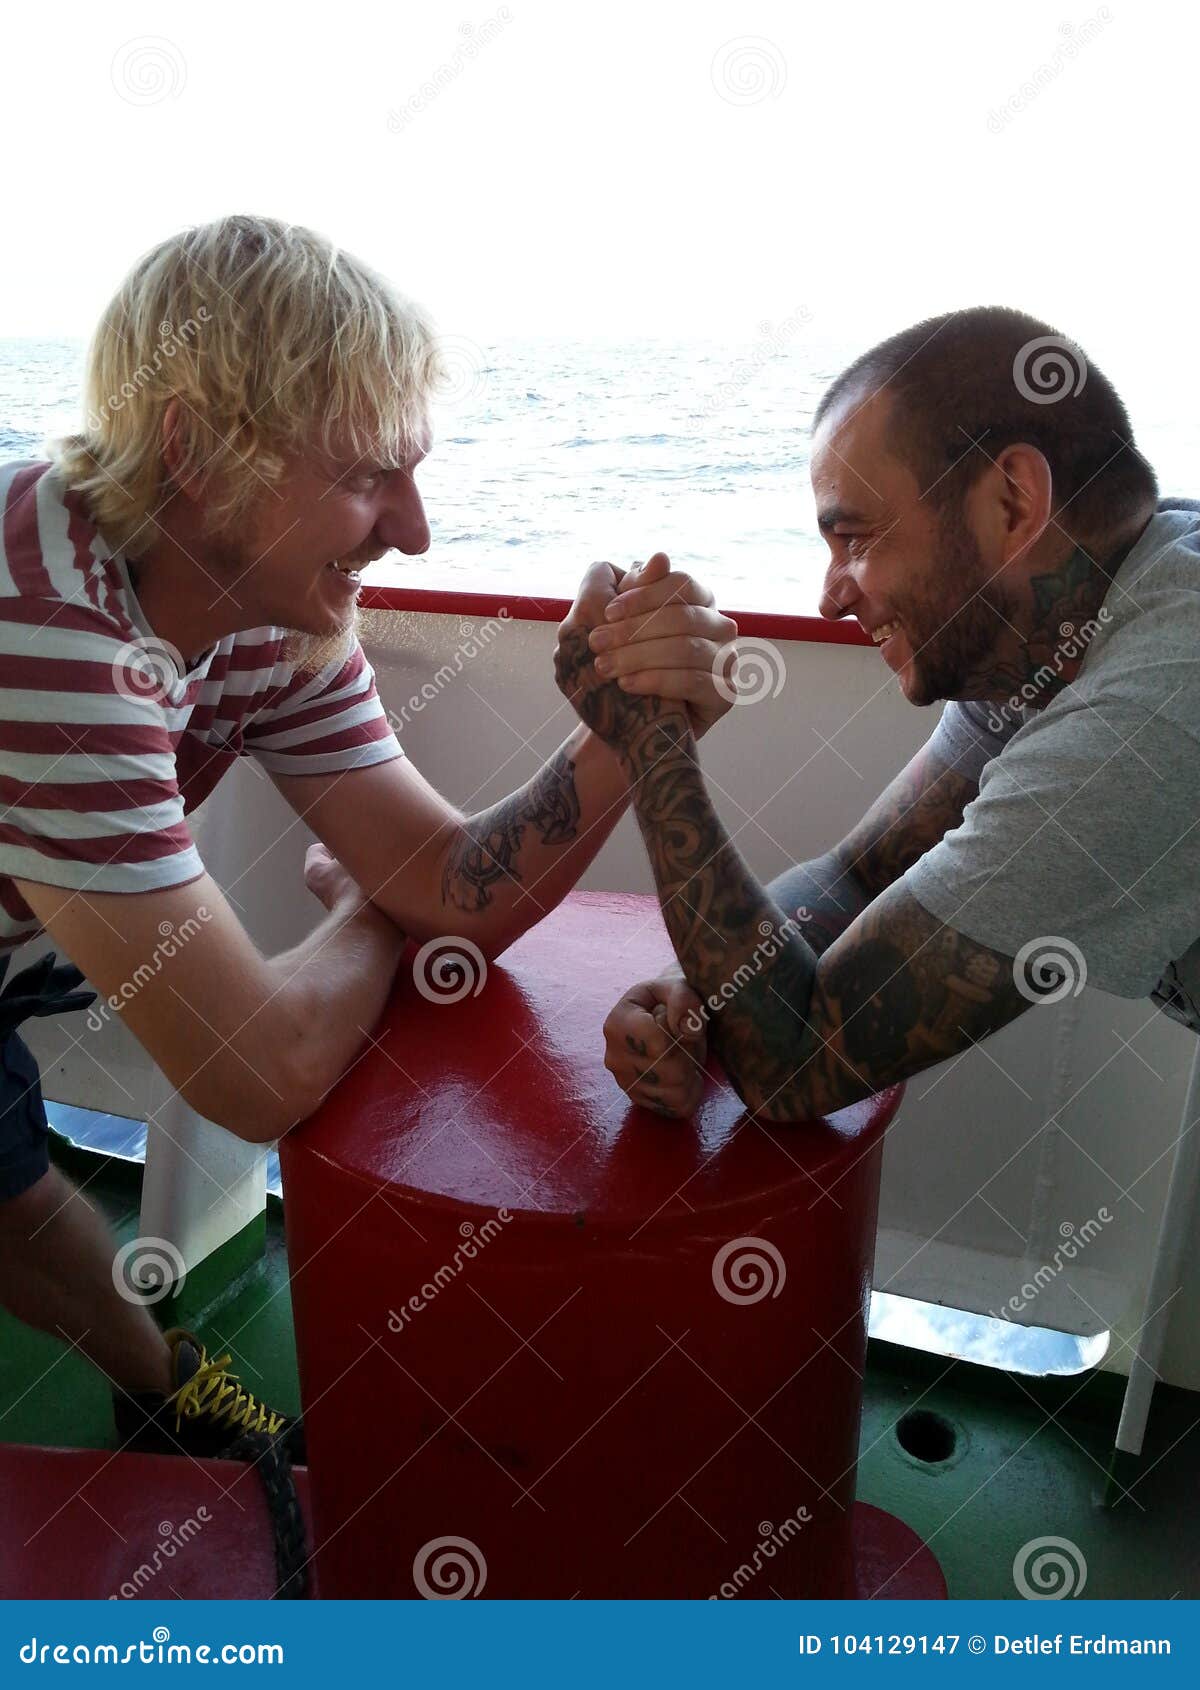 two seamen are arm wrestling on board of a vessel at sea